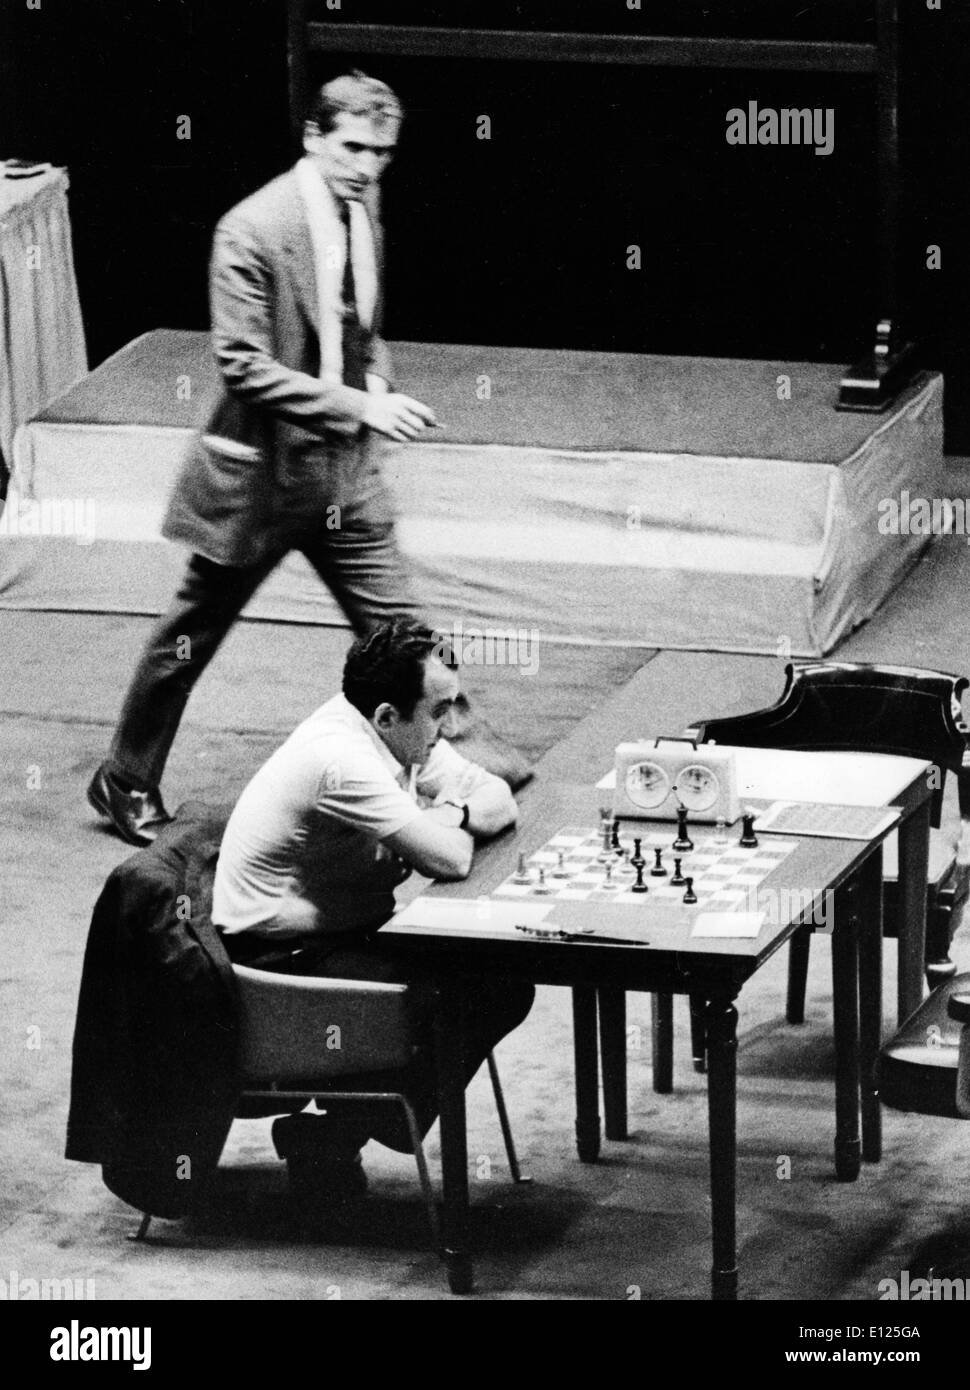 Jul 16, 2004; Buenos Aires, Argentina; (File foto 10/23/1971) l'ex campione del mondo di scacchi Bobby Fischer degli Stati Uniti, arrestato in Giappone e ha voluto che nel suo paese di origine a partire dal 1992 per la rottura di un embargo internazionale sulla ex Jugoslavia è ampiamente considerato uno degli sport più brillanti menti di tutti i tempi. Nel 1972, a Helsinki, il genio americano ha rotto il 24 anni di dominio sovietico sconfiggendo Boris Spassky, e ha portato a casa un campionato del mondo Foto Stock